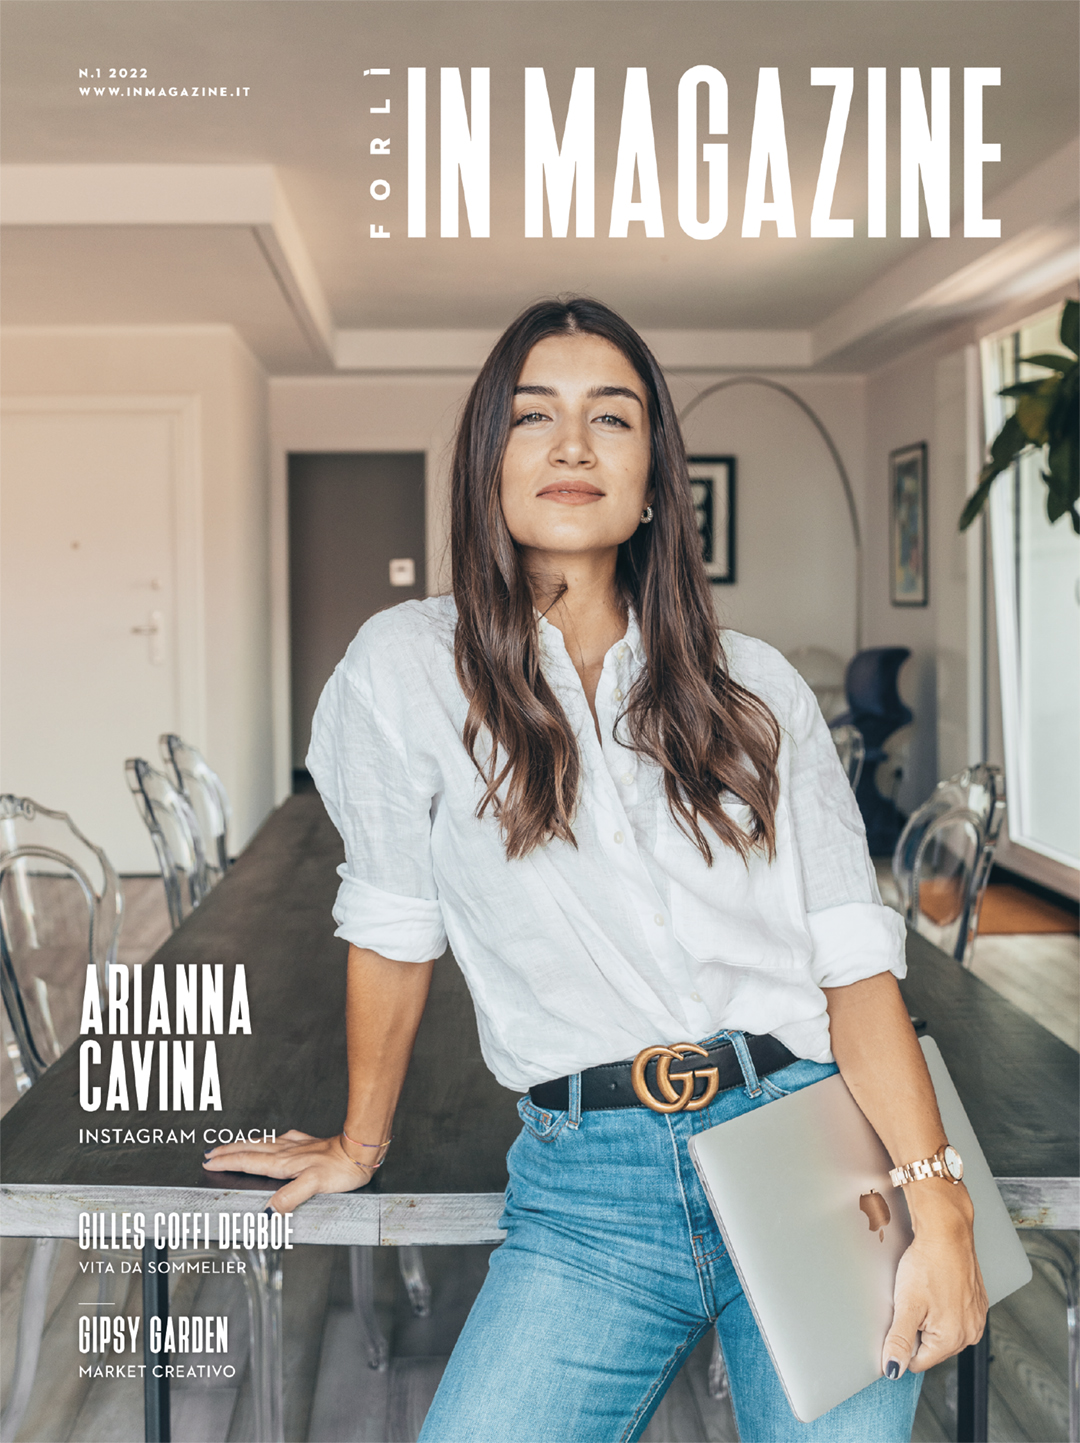 È online il nuovo numero di Forlì IN Magazine. Il primo numero di questo anno.